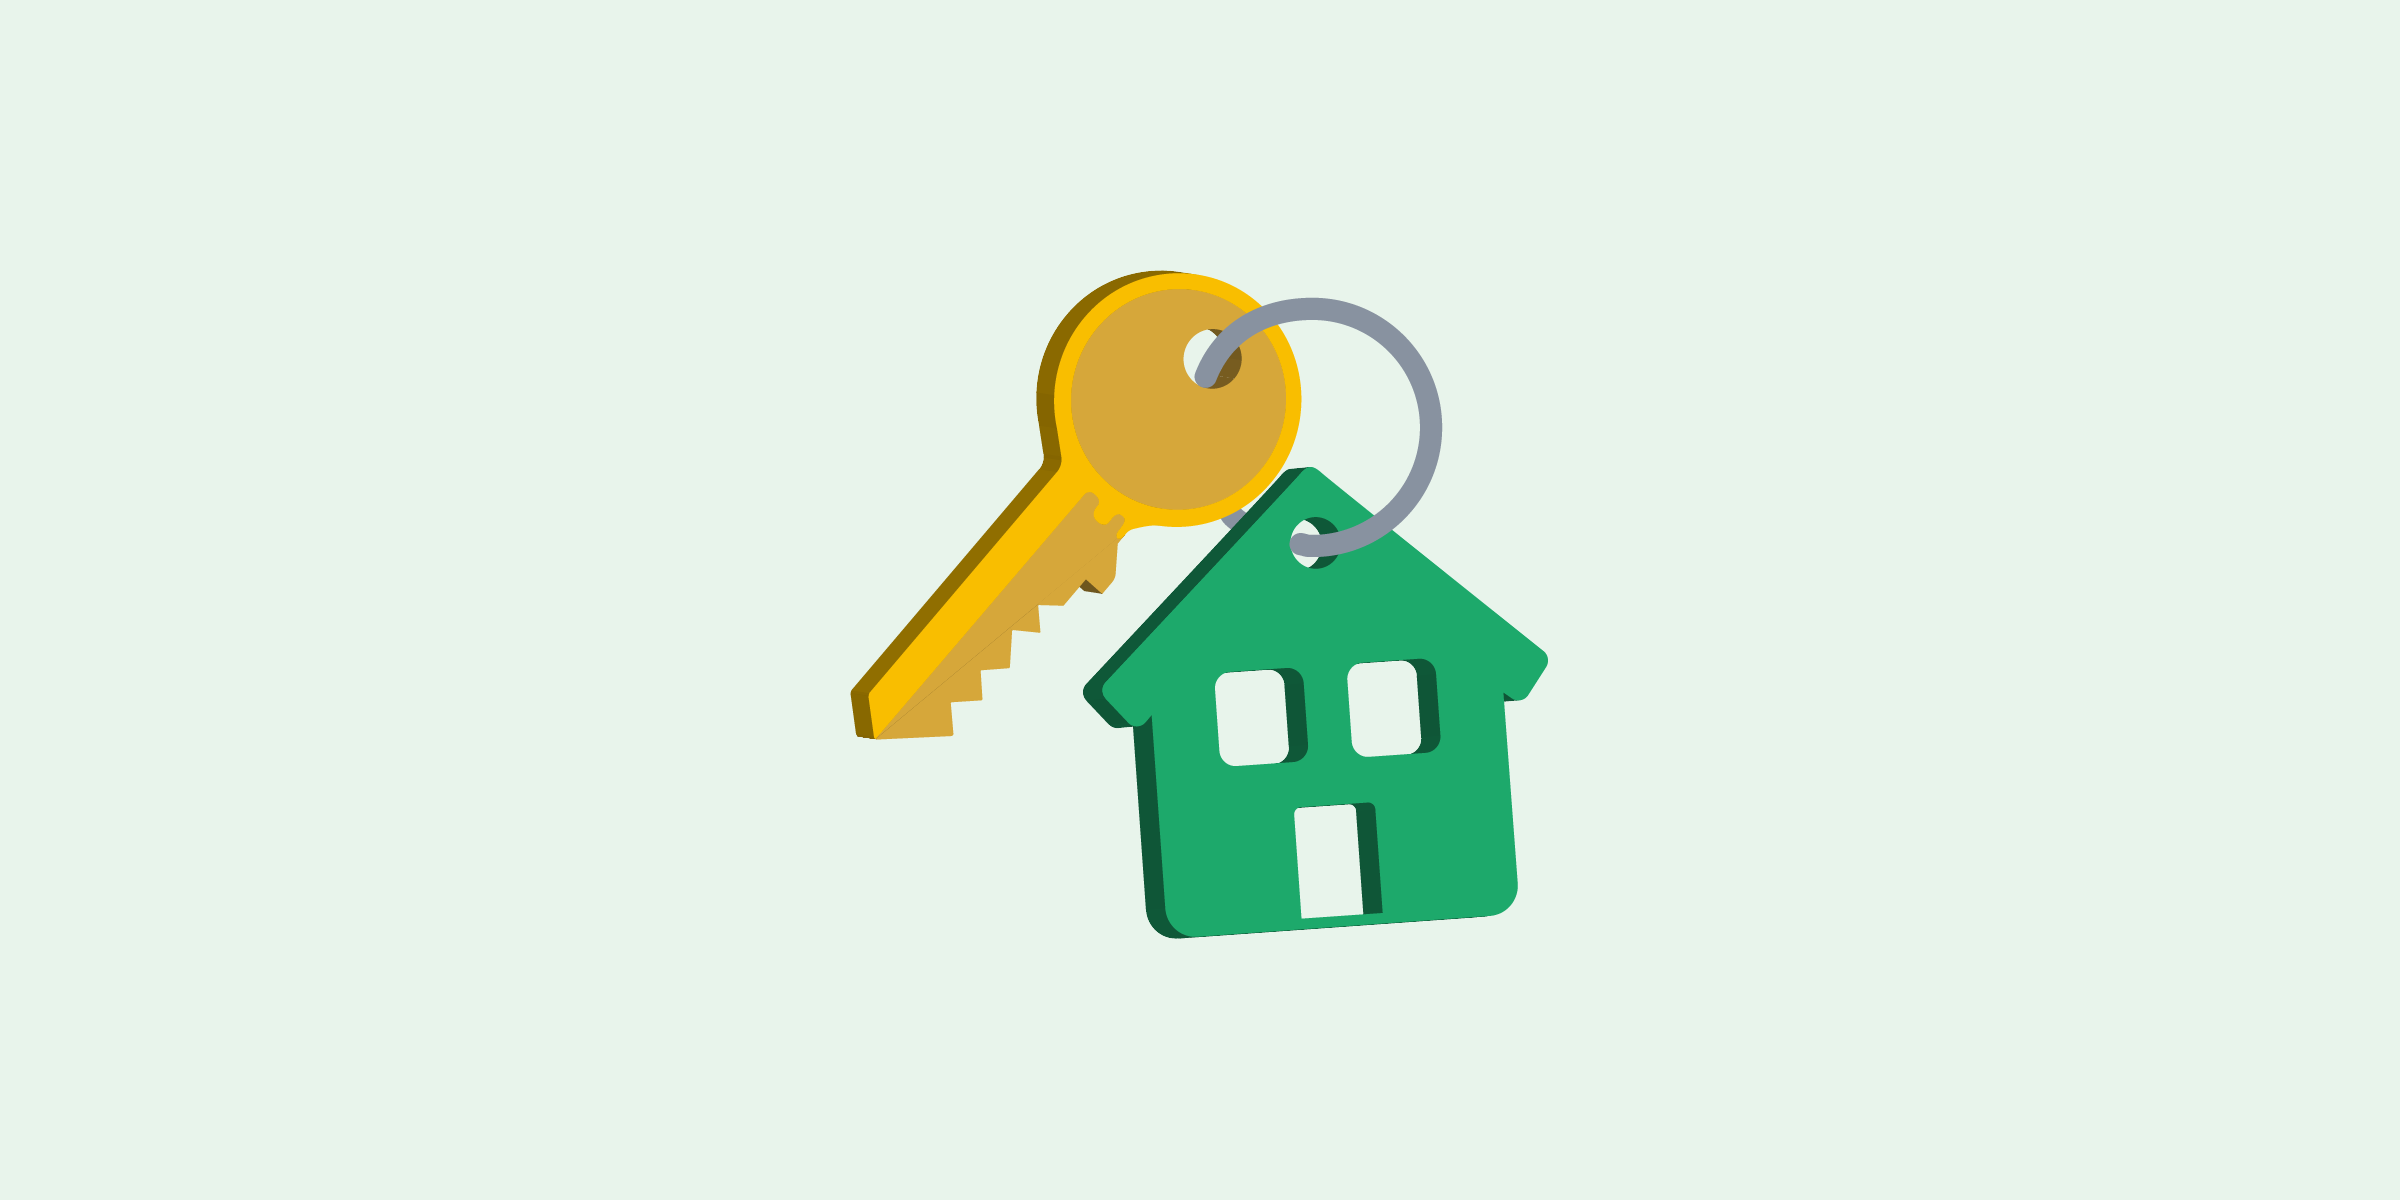 Ilustración de un llavero en forma de casa color verde con dos ventanas y una puerta, del llavero cuelga una llave dorada.